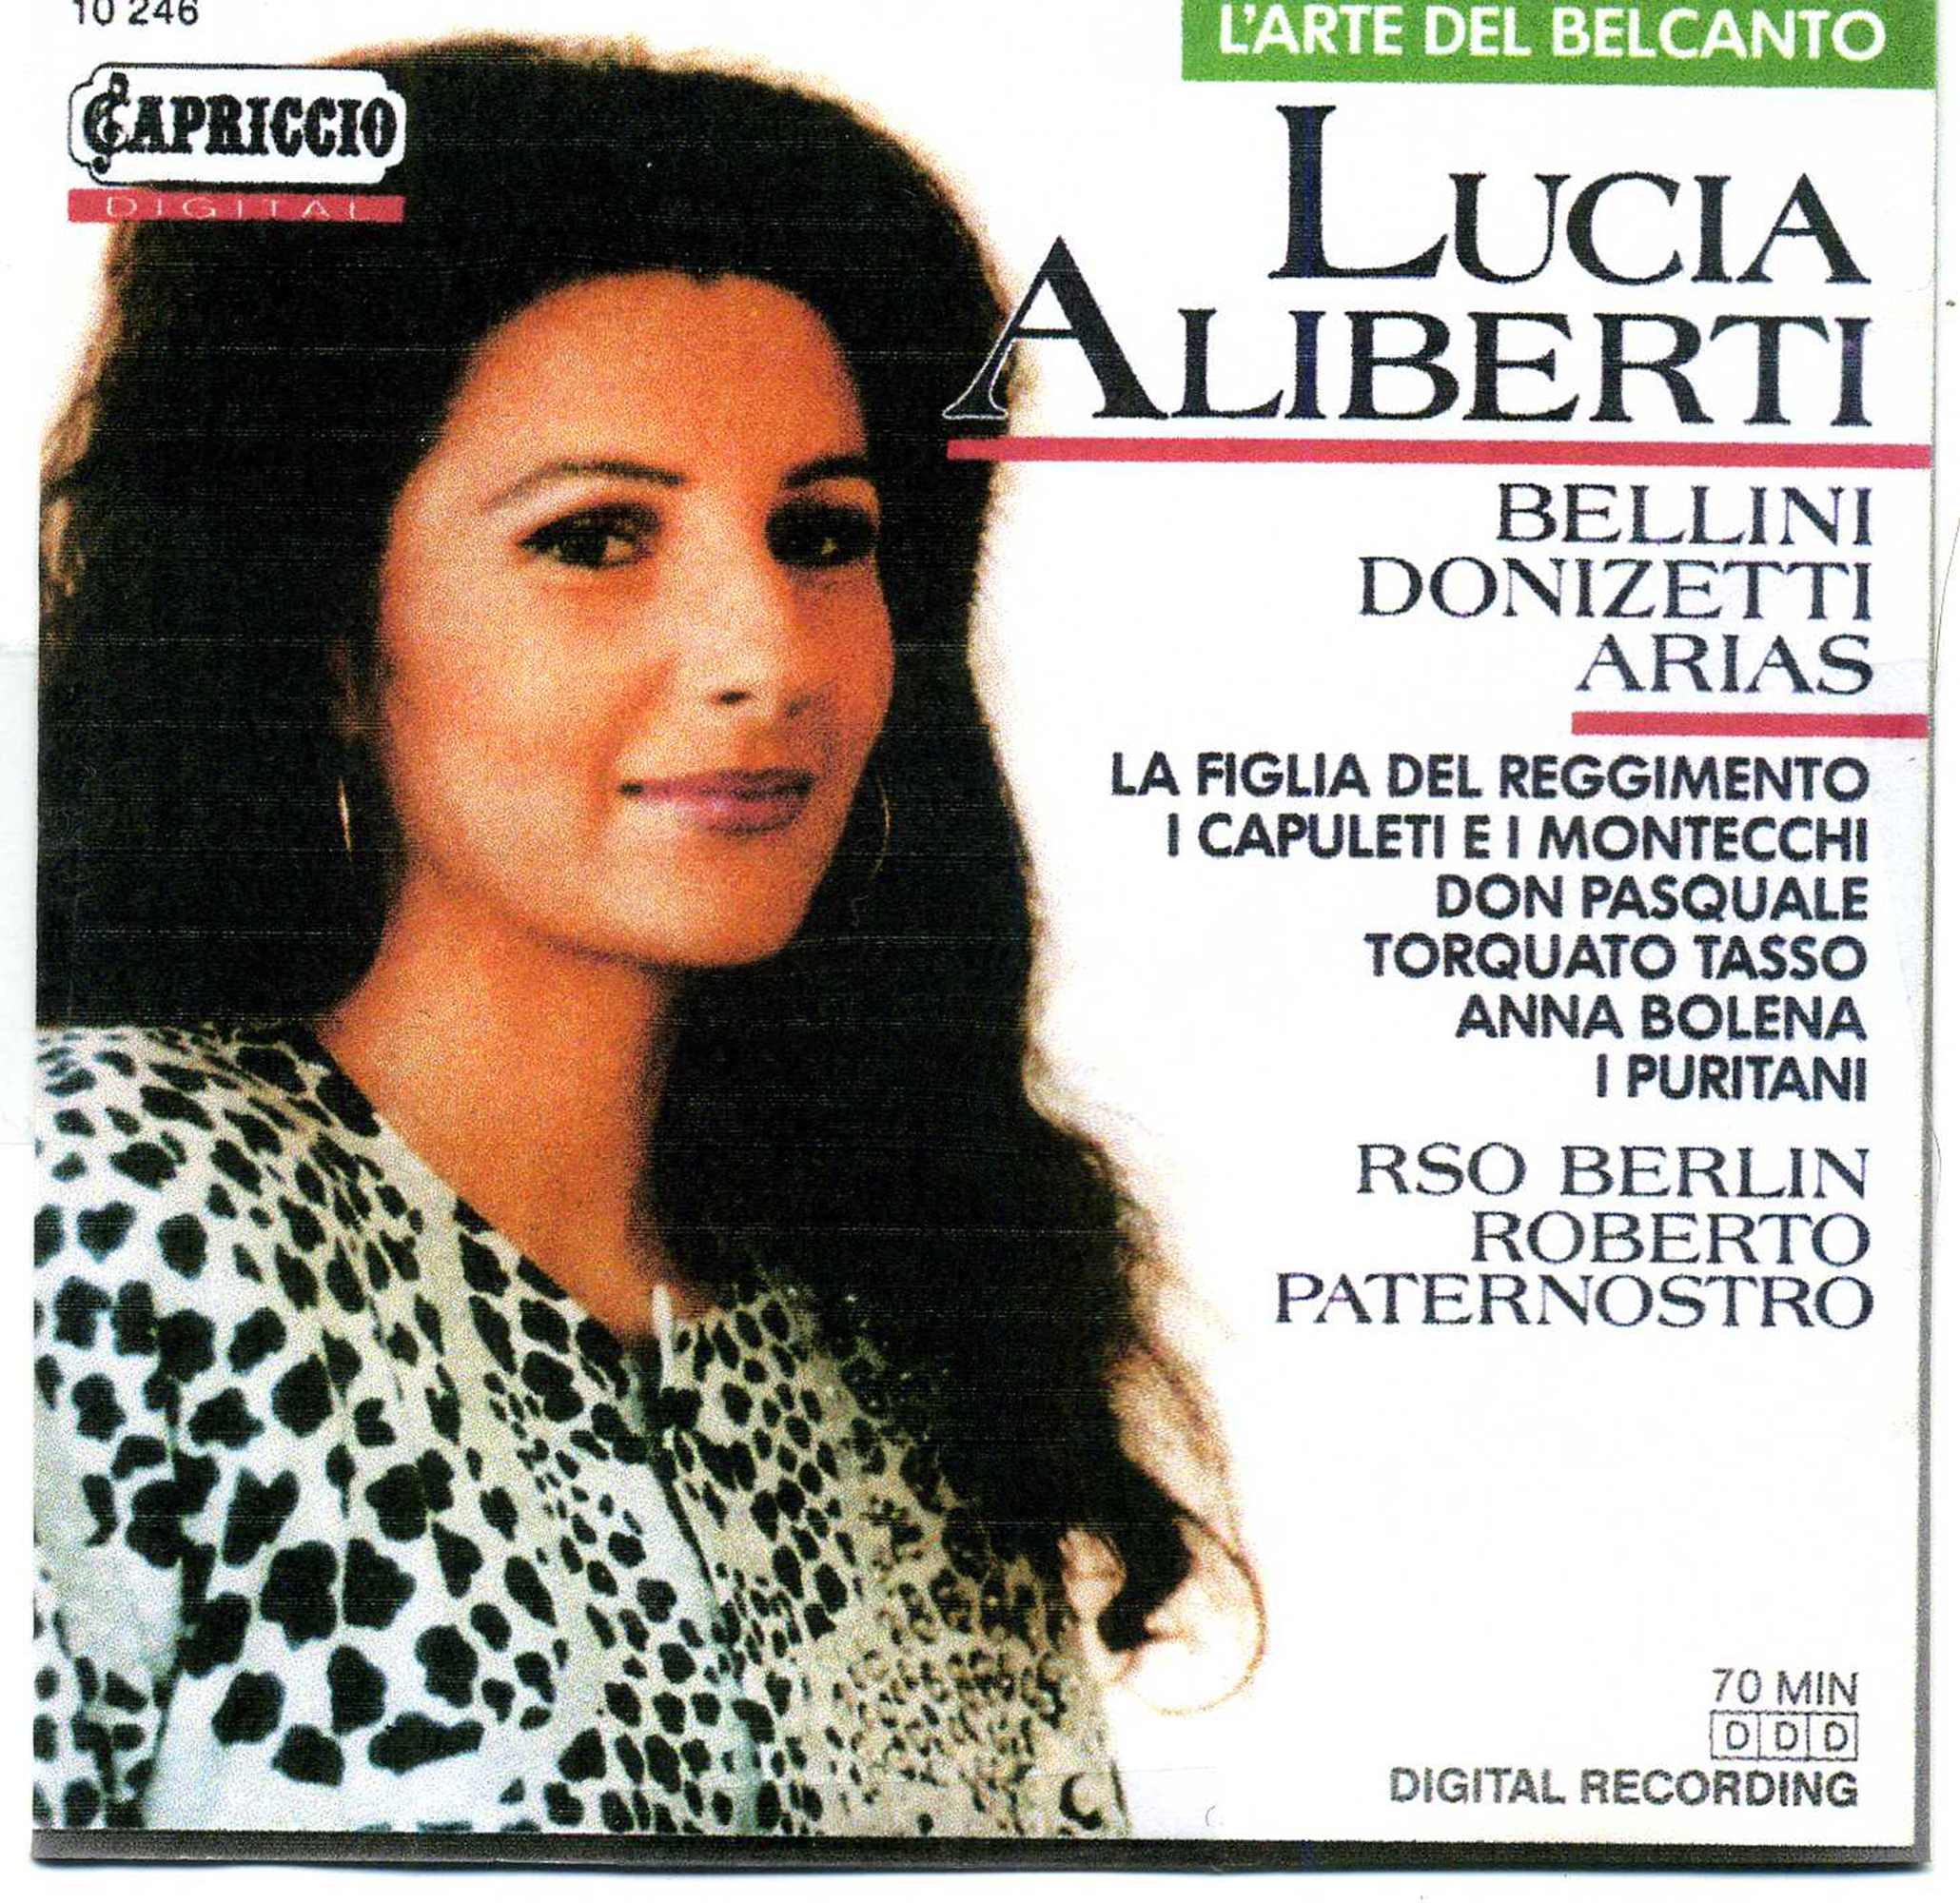 Lucia Aliberti⚘”Bellini Donizetti Arias"⚘conductor Roberto Paternostro⚘Digital Recording⚘Capriccio Digital⚘:http://www.luciaaliberti.it #luciaaliberti #robertopaternostro #bellinidonizettiarias #capricciodigital